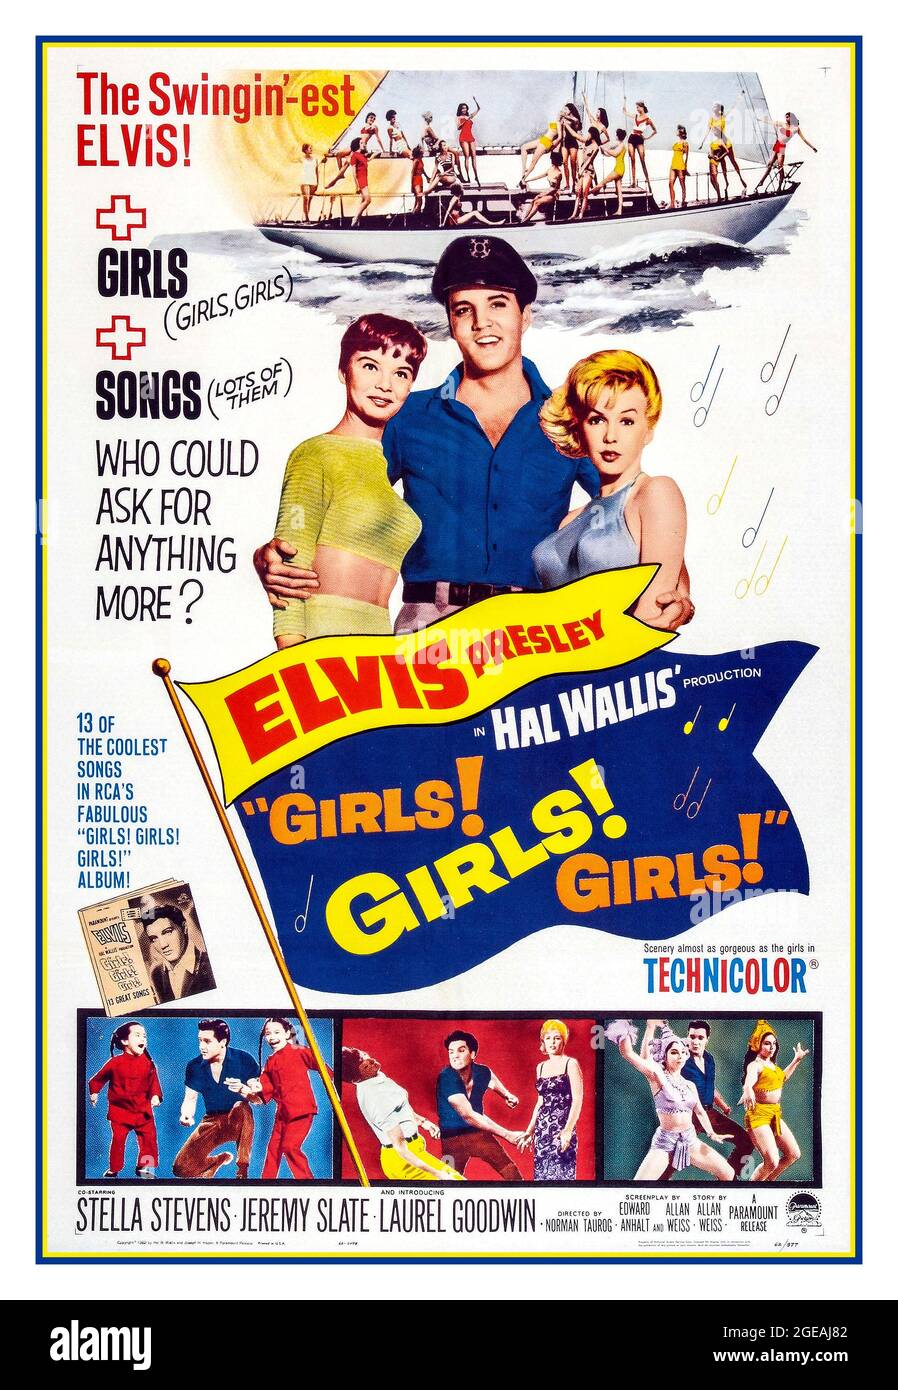 Vintage 1962 Elvis Presley Movie Film Poster 'Girls Girls Girls Girls Girls mit Elvis Presley Stella Stevens Jeremy Slate Laurel Goodwin unter der Regie von Norman Taurog und produziert von Hal Wallis 1962 für den Golden Globe nominierter amerikanischer Musical-Comedy-Film Stockfoto